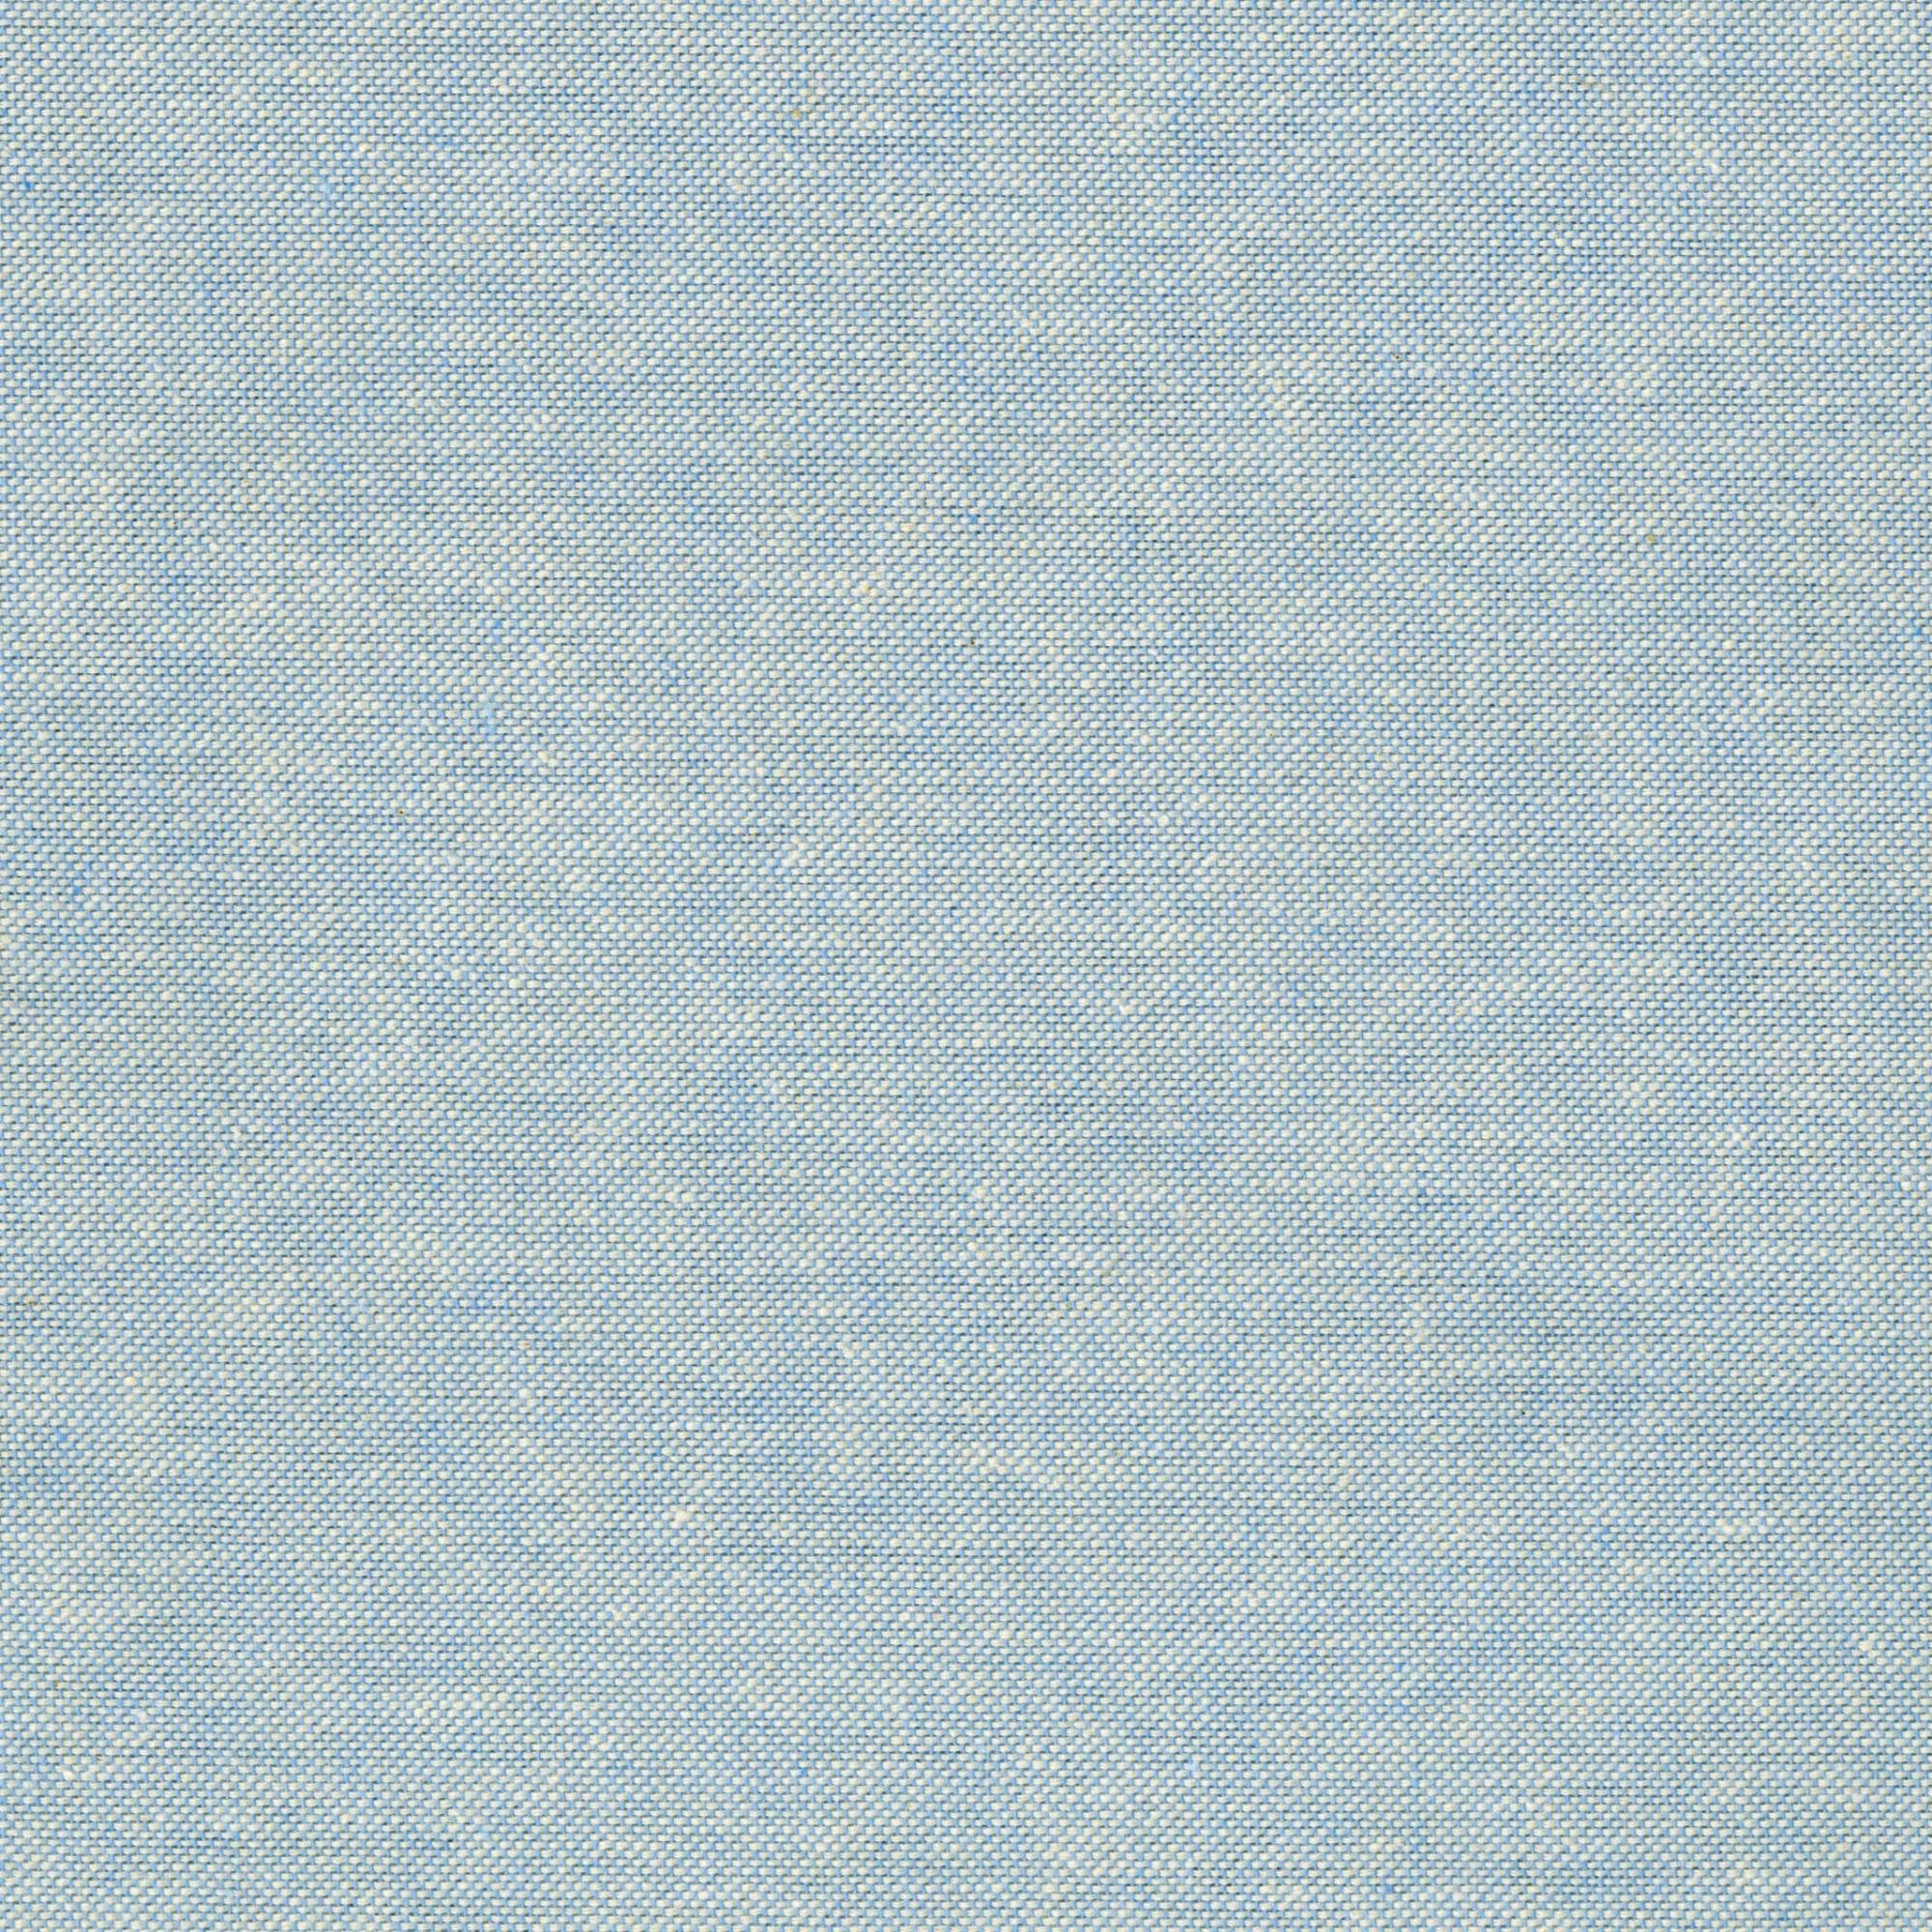 Tela al corte algodón polo azul ancho 280 cm